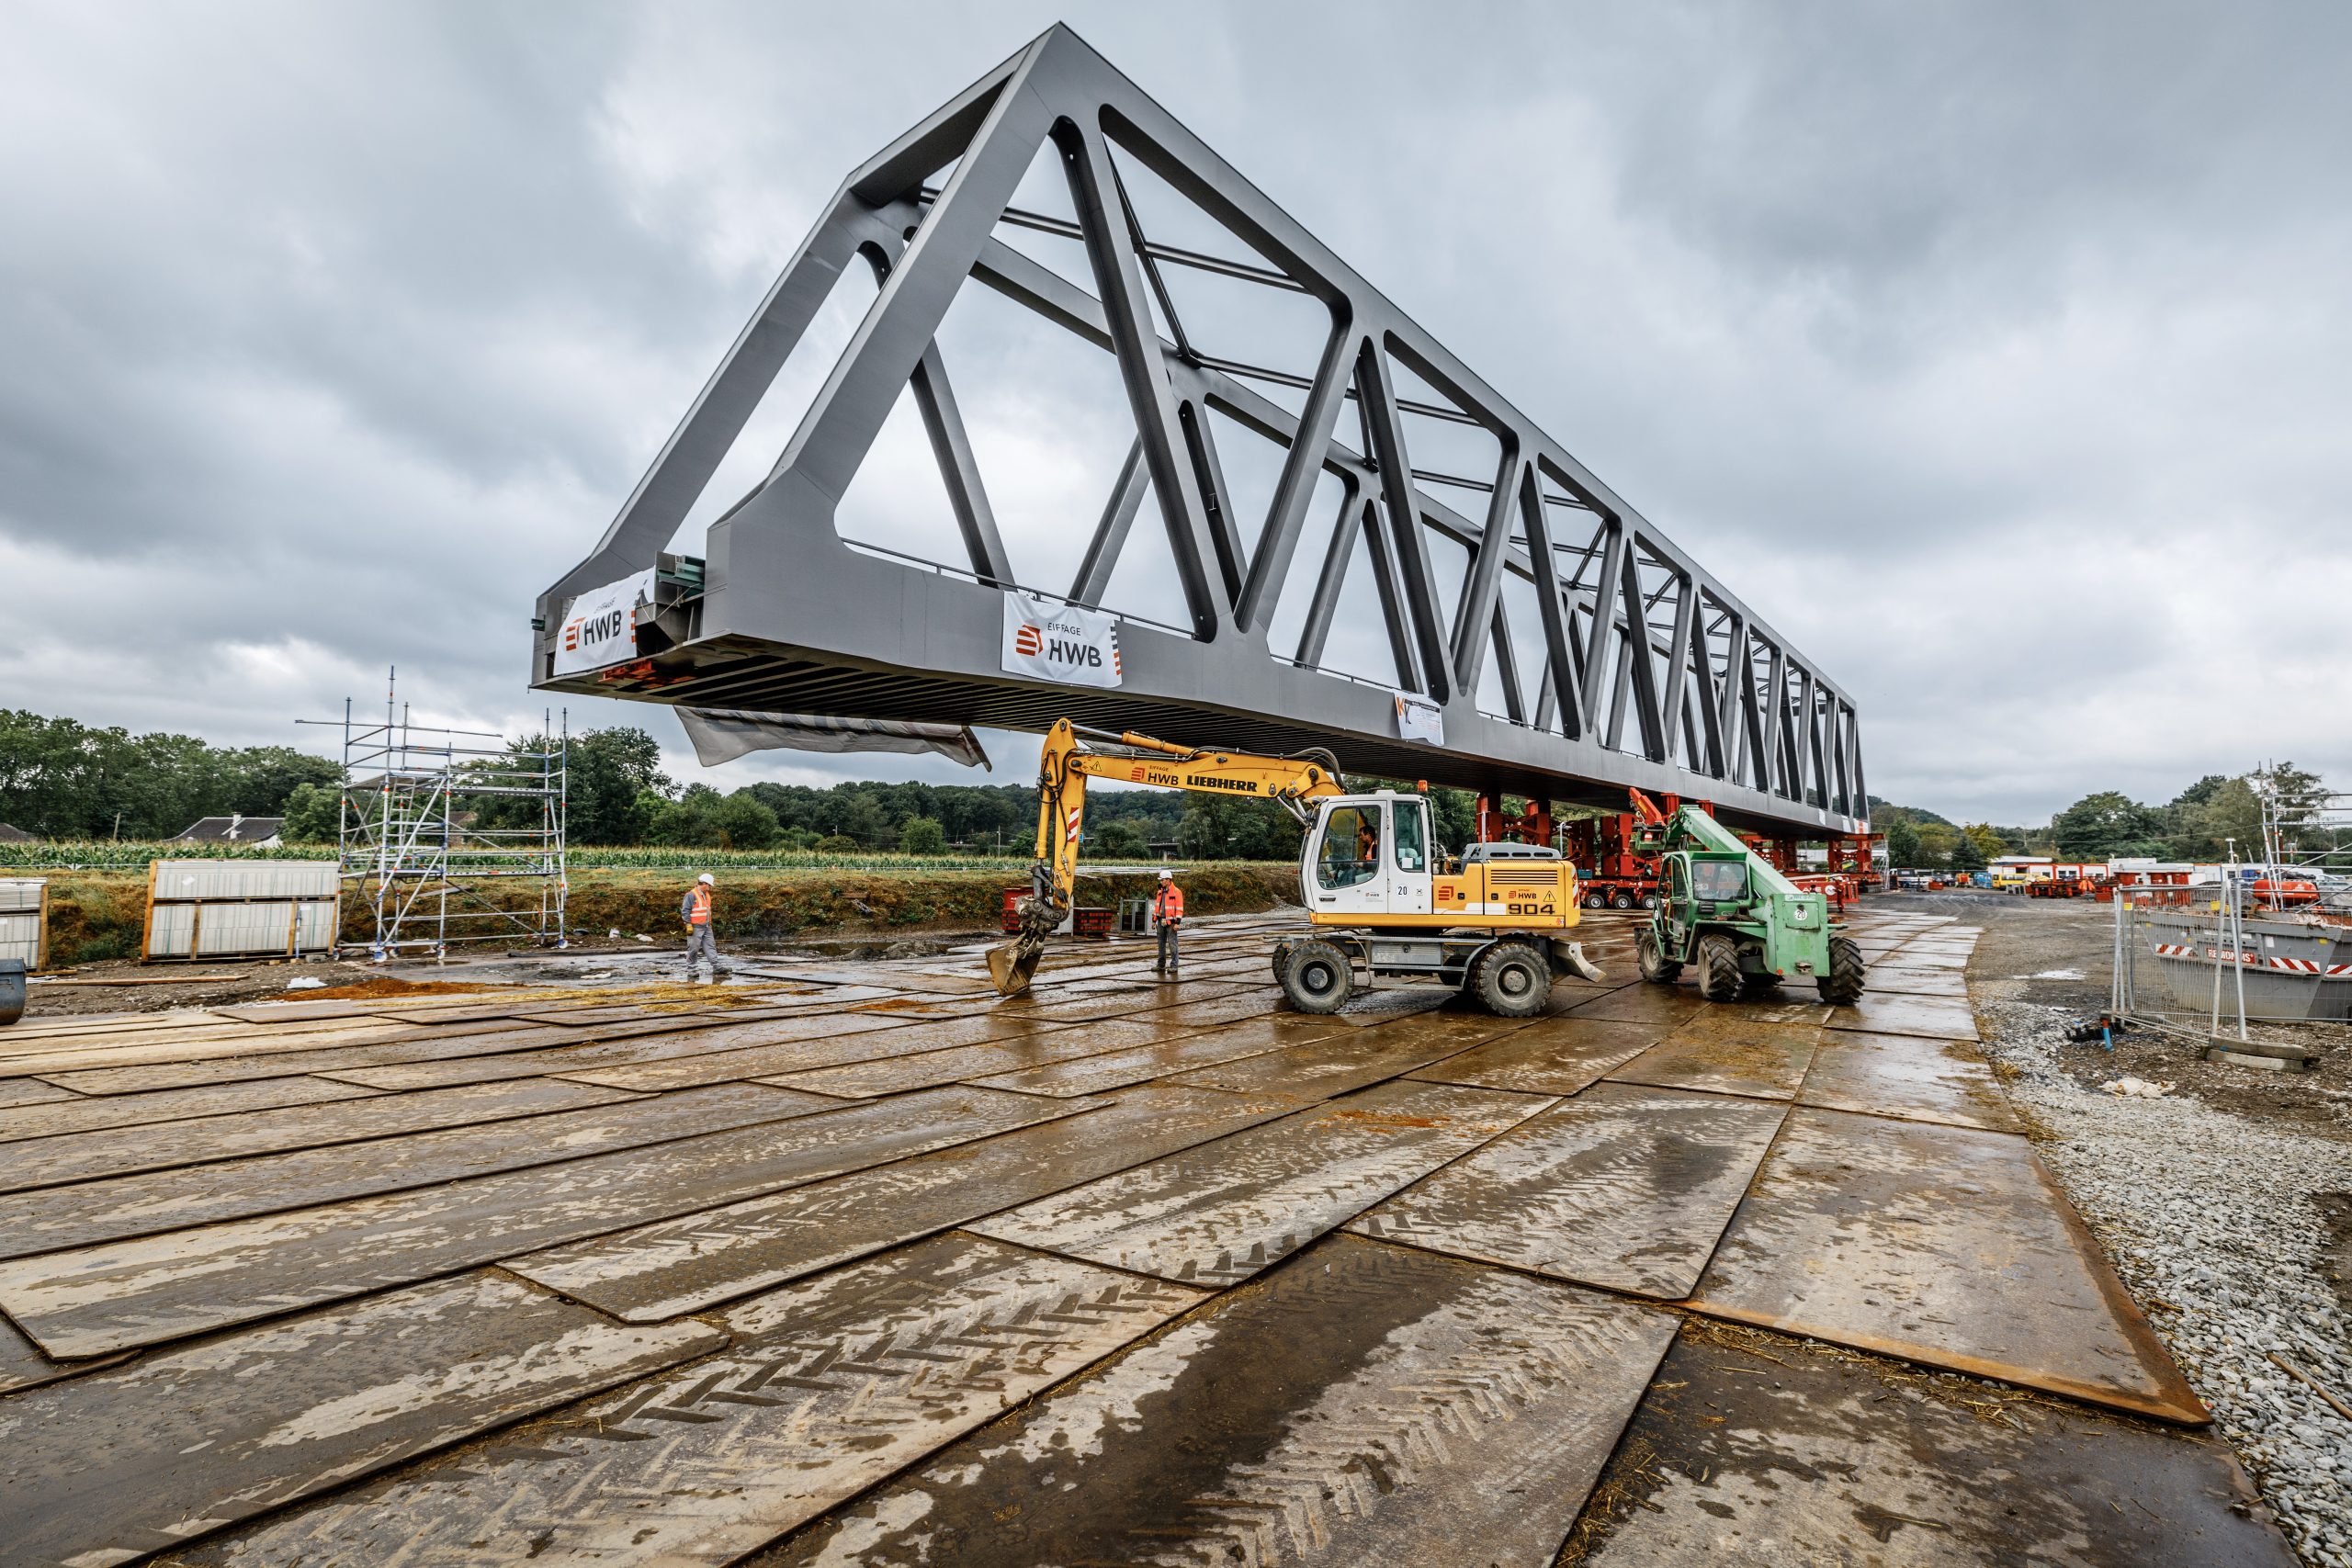 Railway Bridge Construction - Ruhr Canal - Construction Site